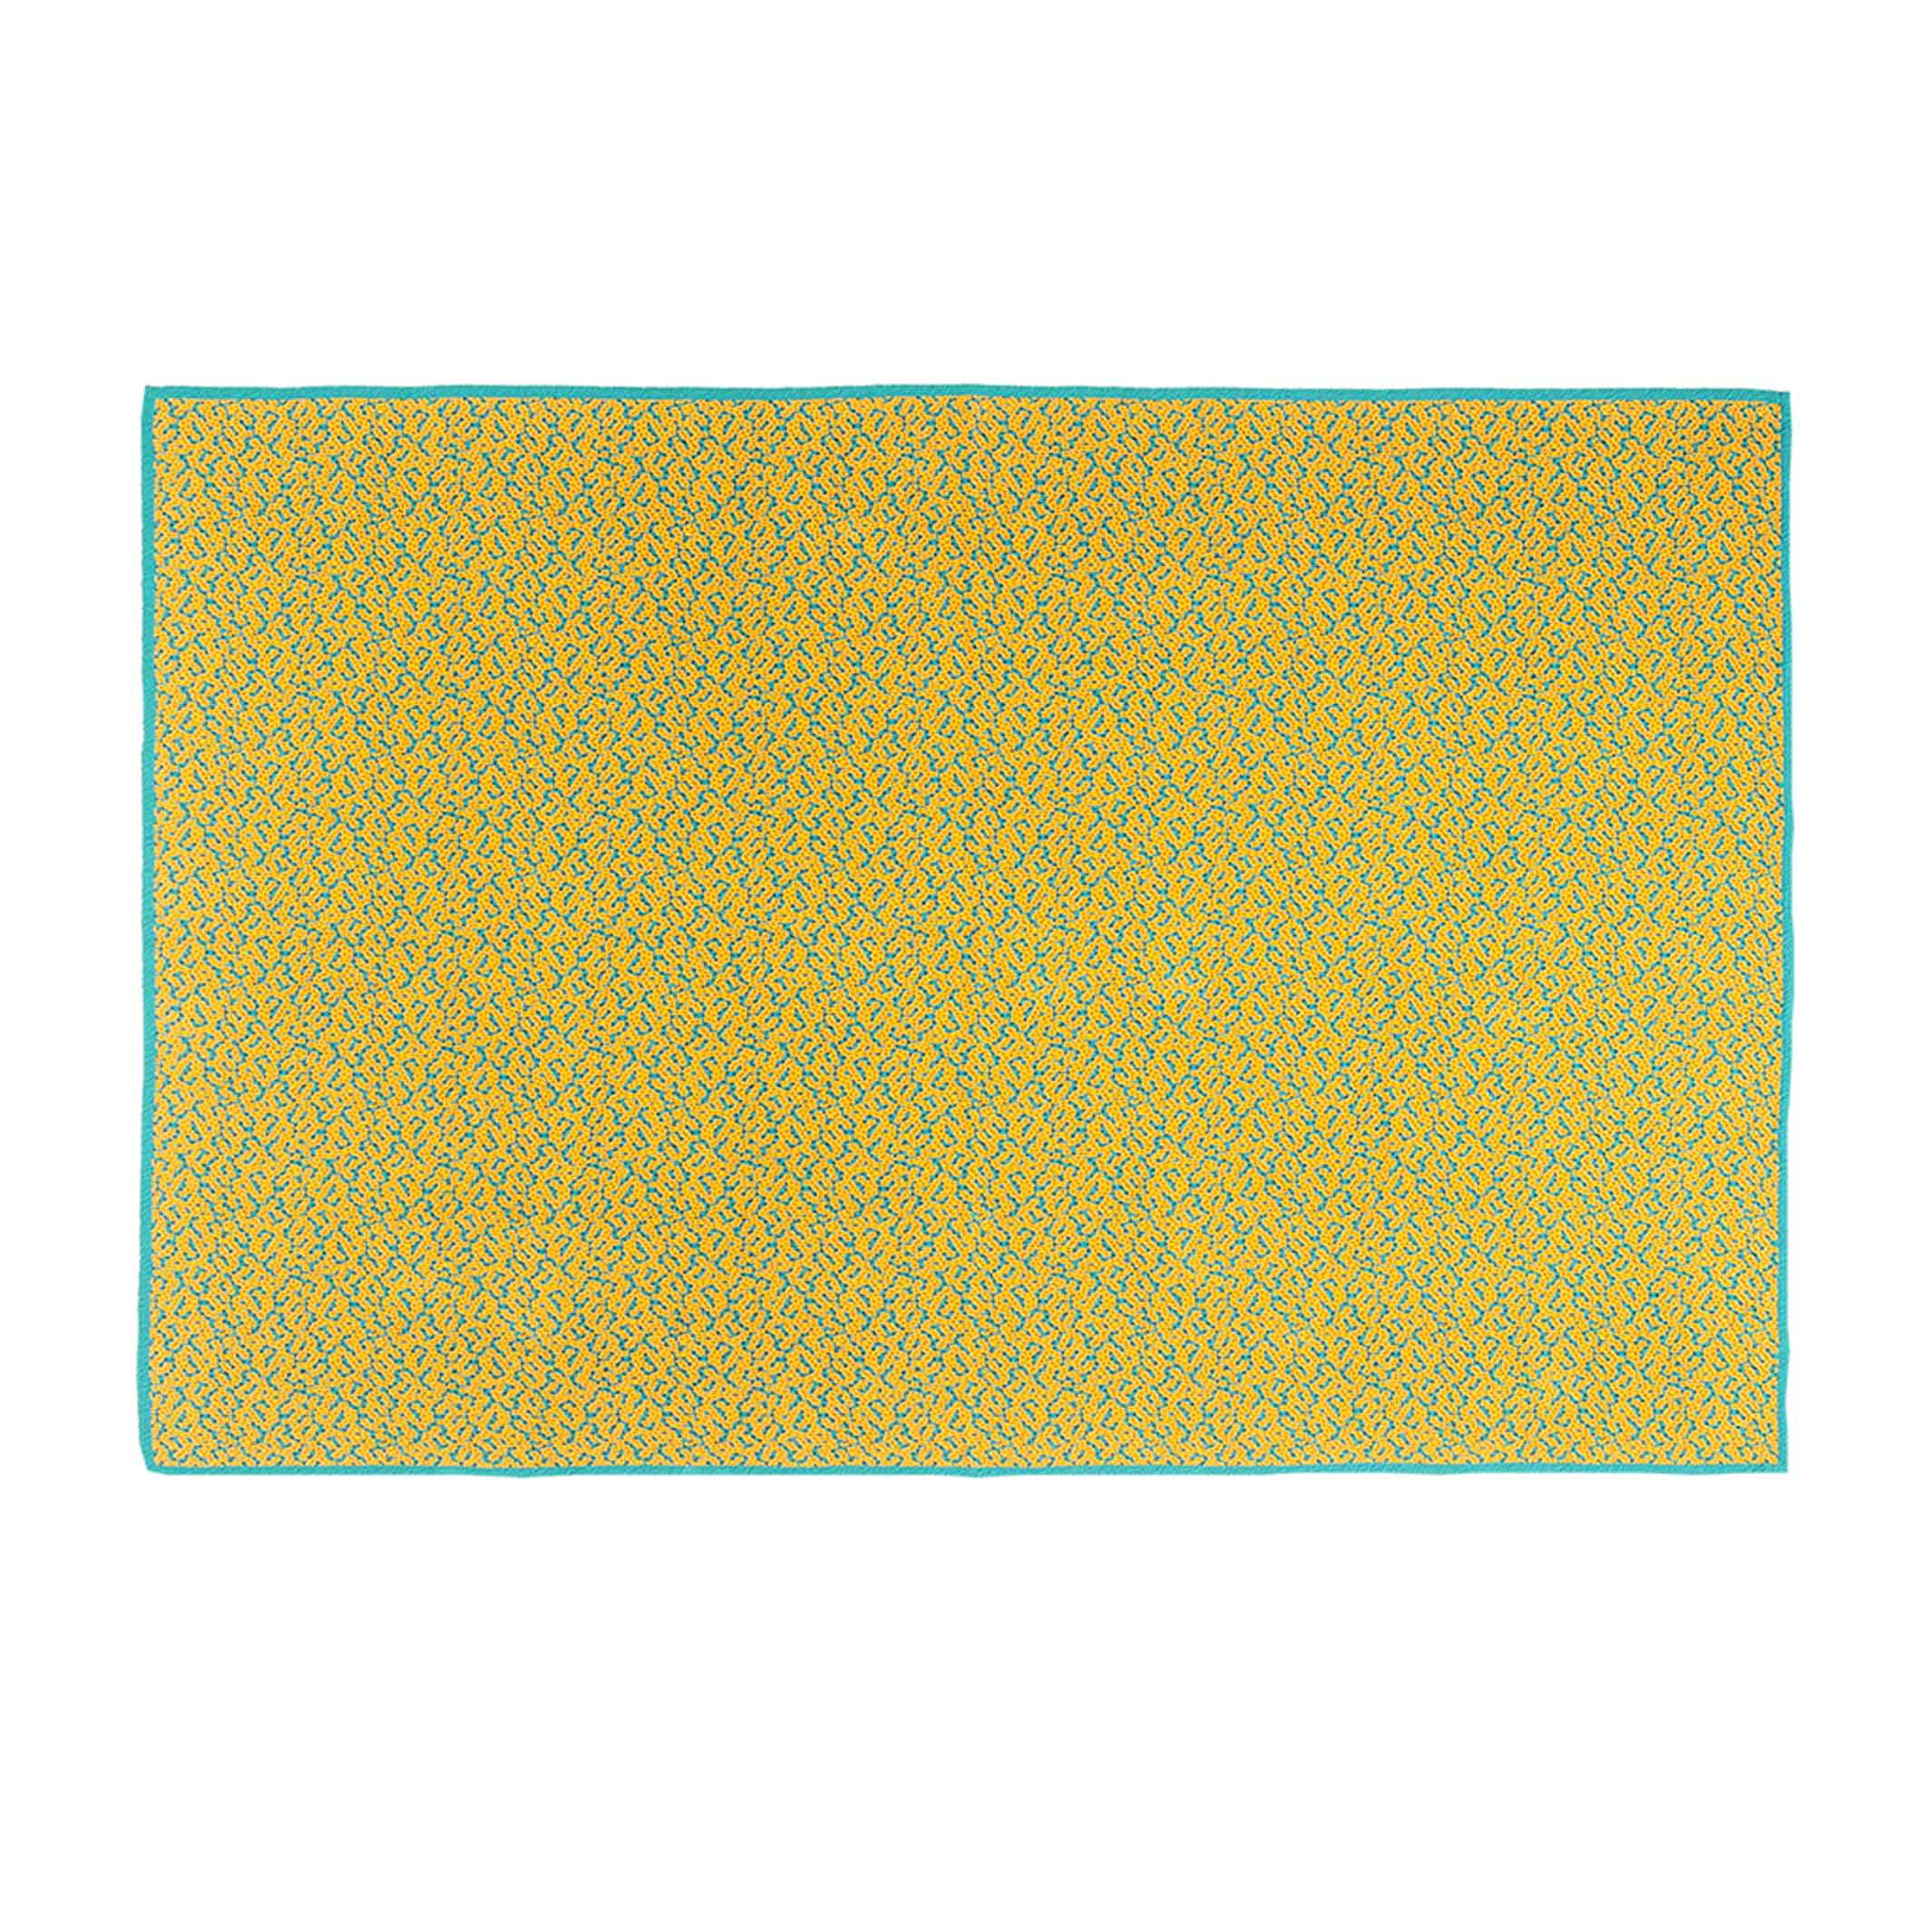 LABYRINTHE BITMAP Ocre doré | couvre-lit ocre | 180x140cm | 90% coton | Cristian Zuzunaga